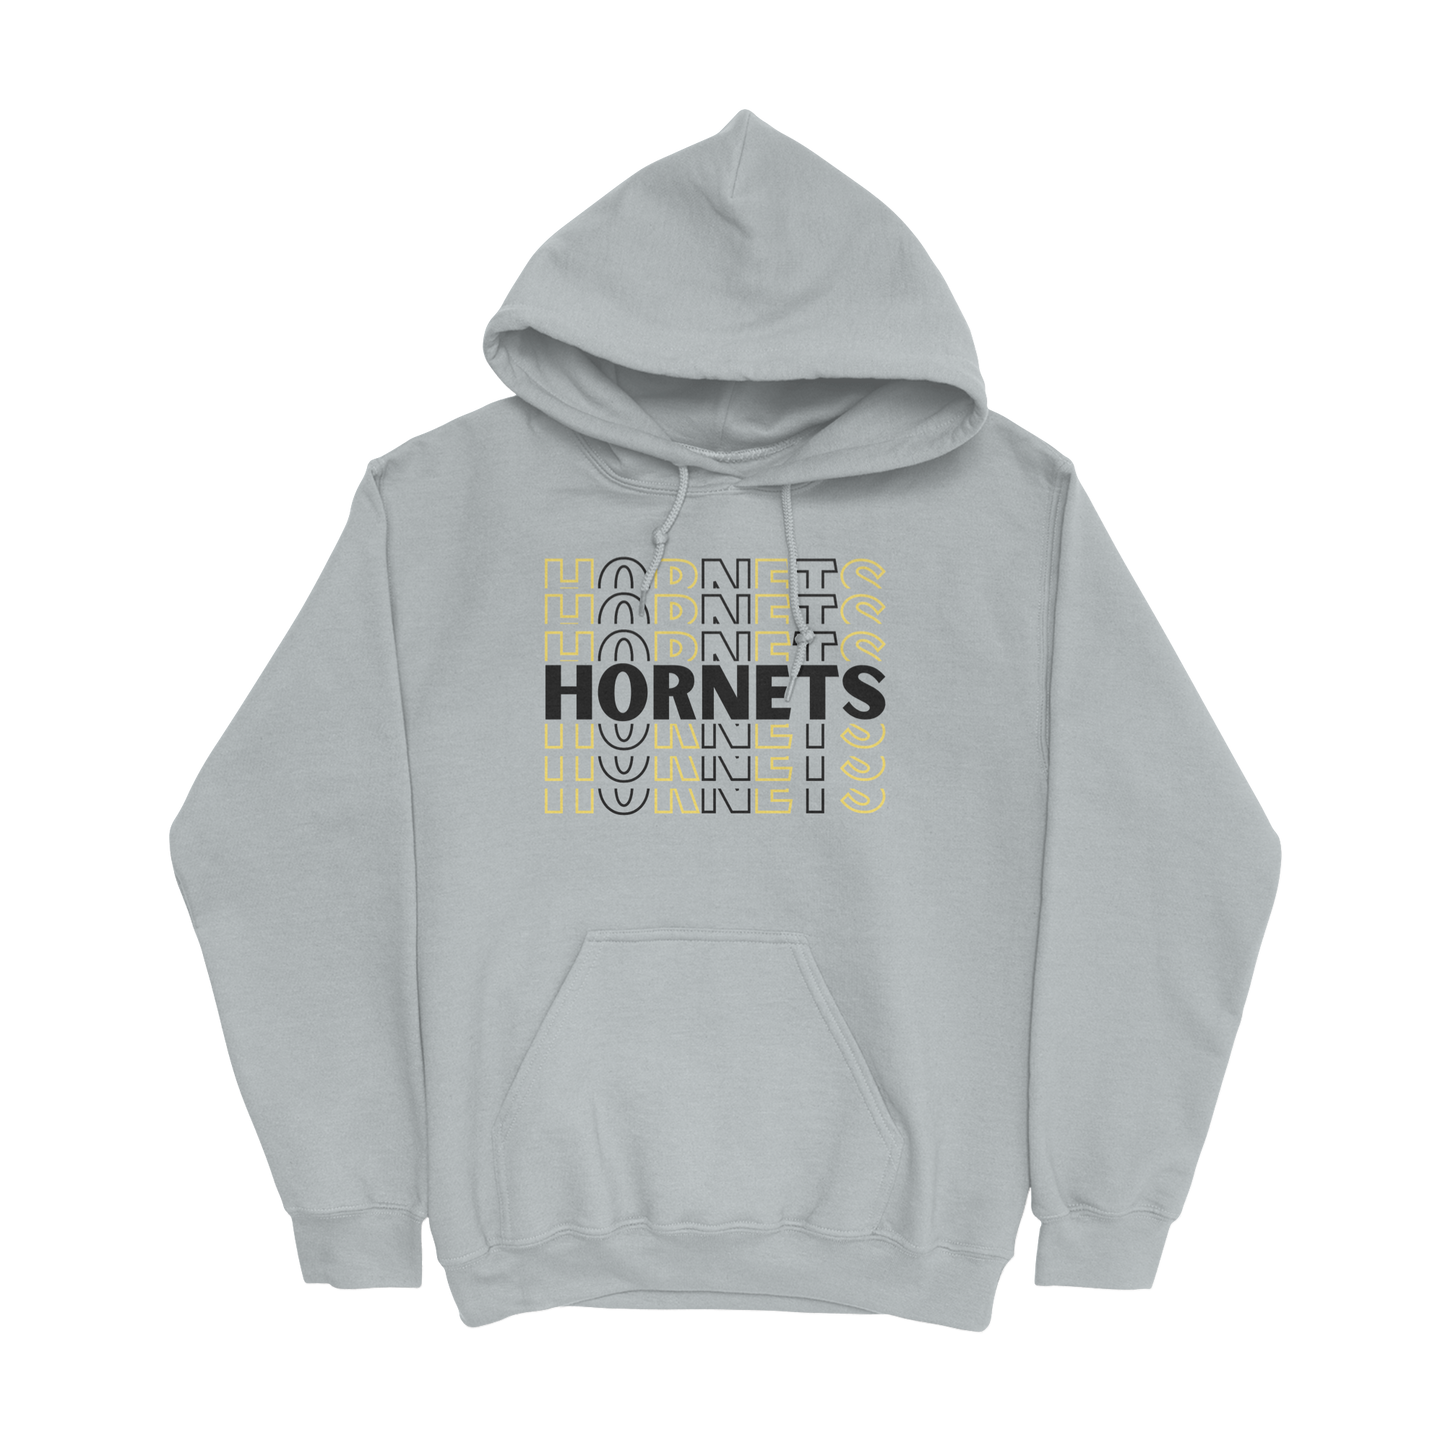 Repeating Hornets Hoodie